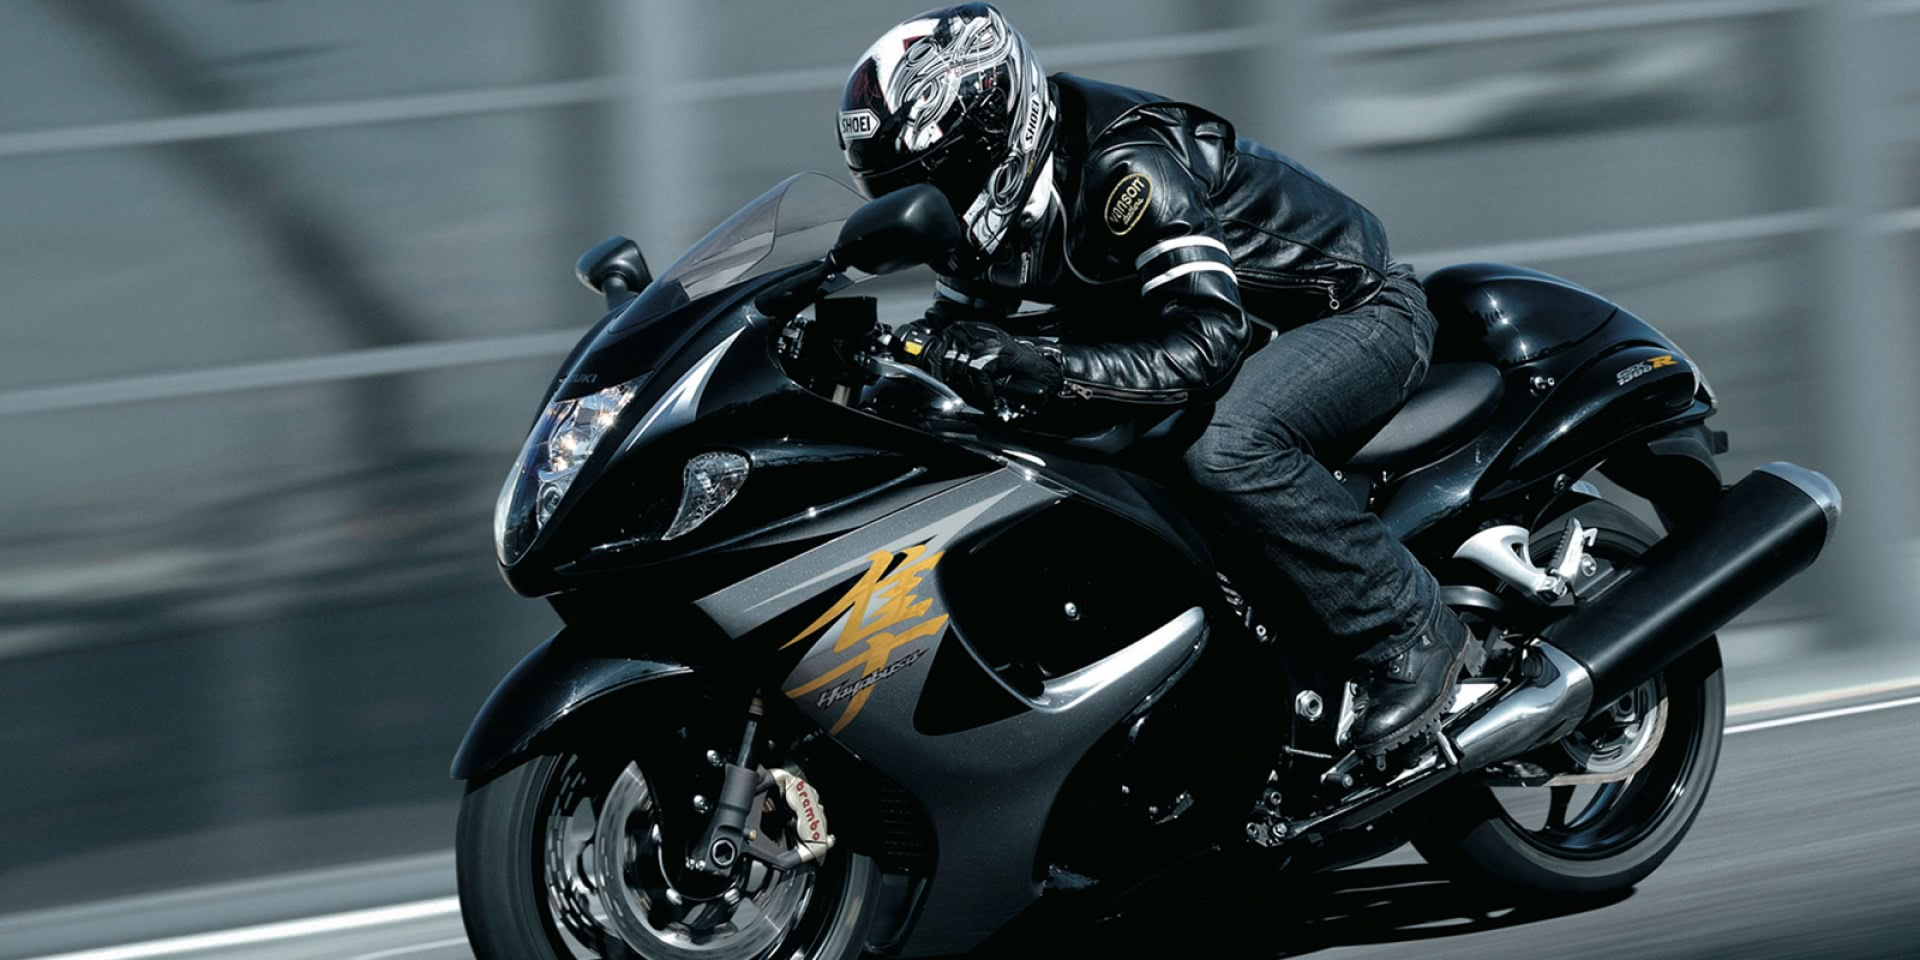 日系四大摩托车品牌本田铃木雅马哈川崎谁更强?对比一